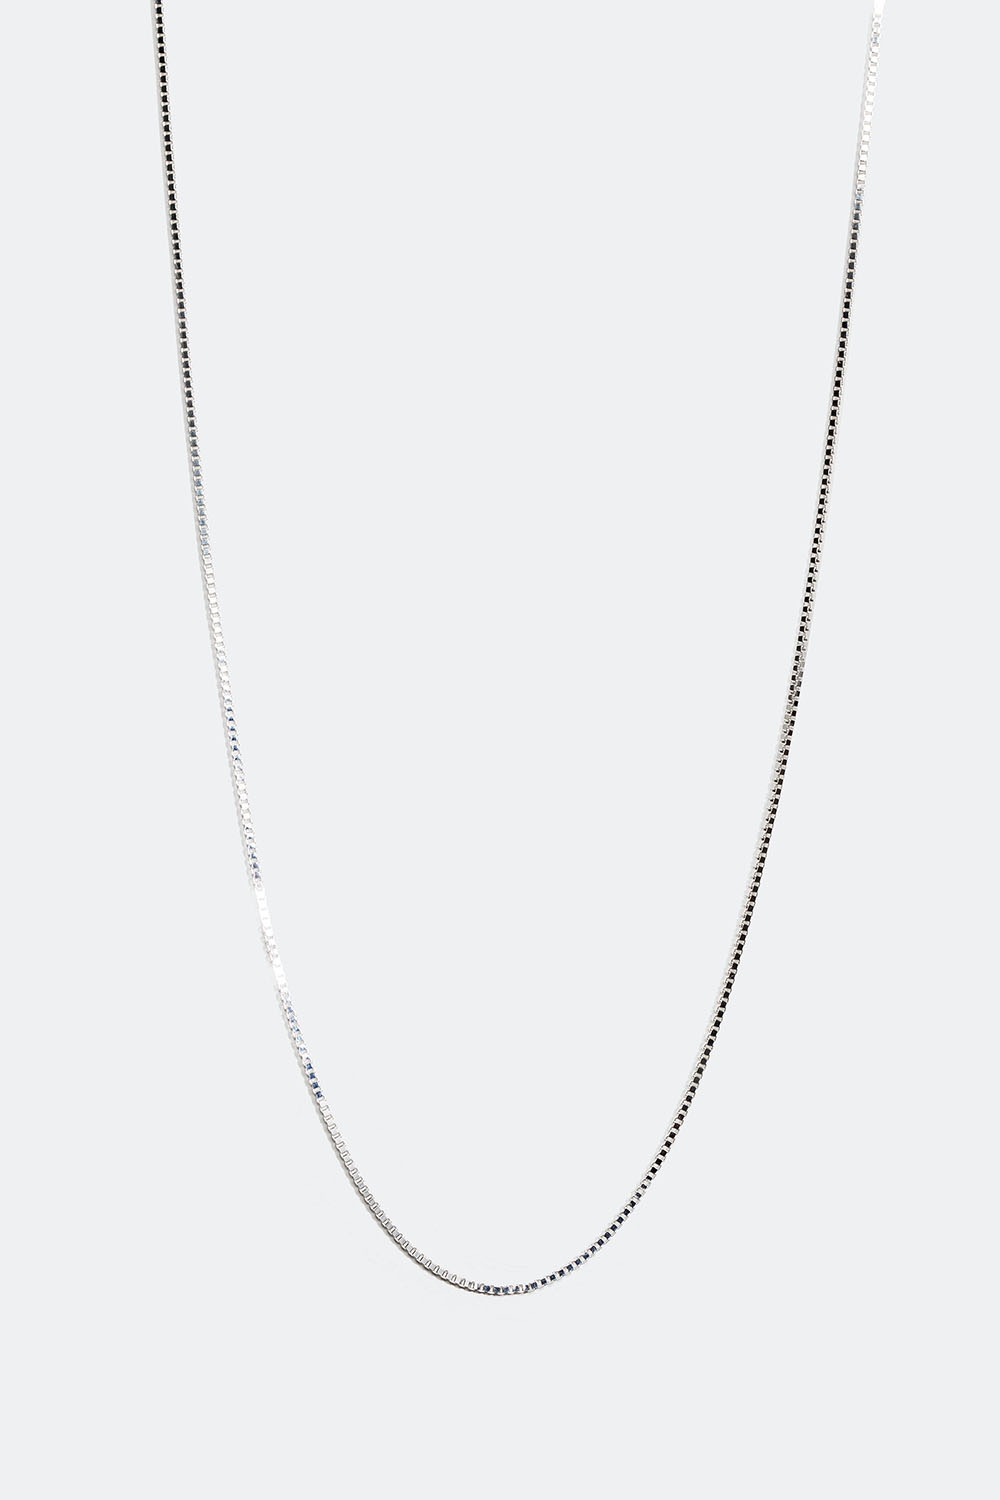 Venetiansk halskedja i äkta silver, 40 cm i gruppen Äkta silver / Silverhalsband / Halskedjor i äkta silver hos Glitter (554000741001)